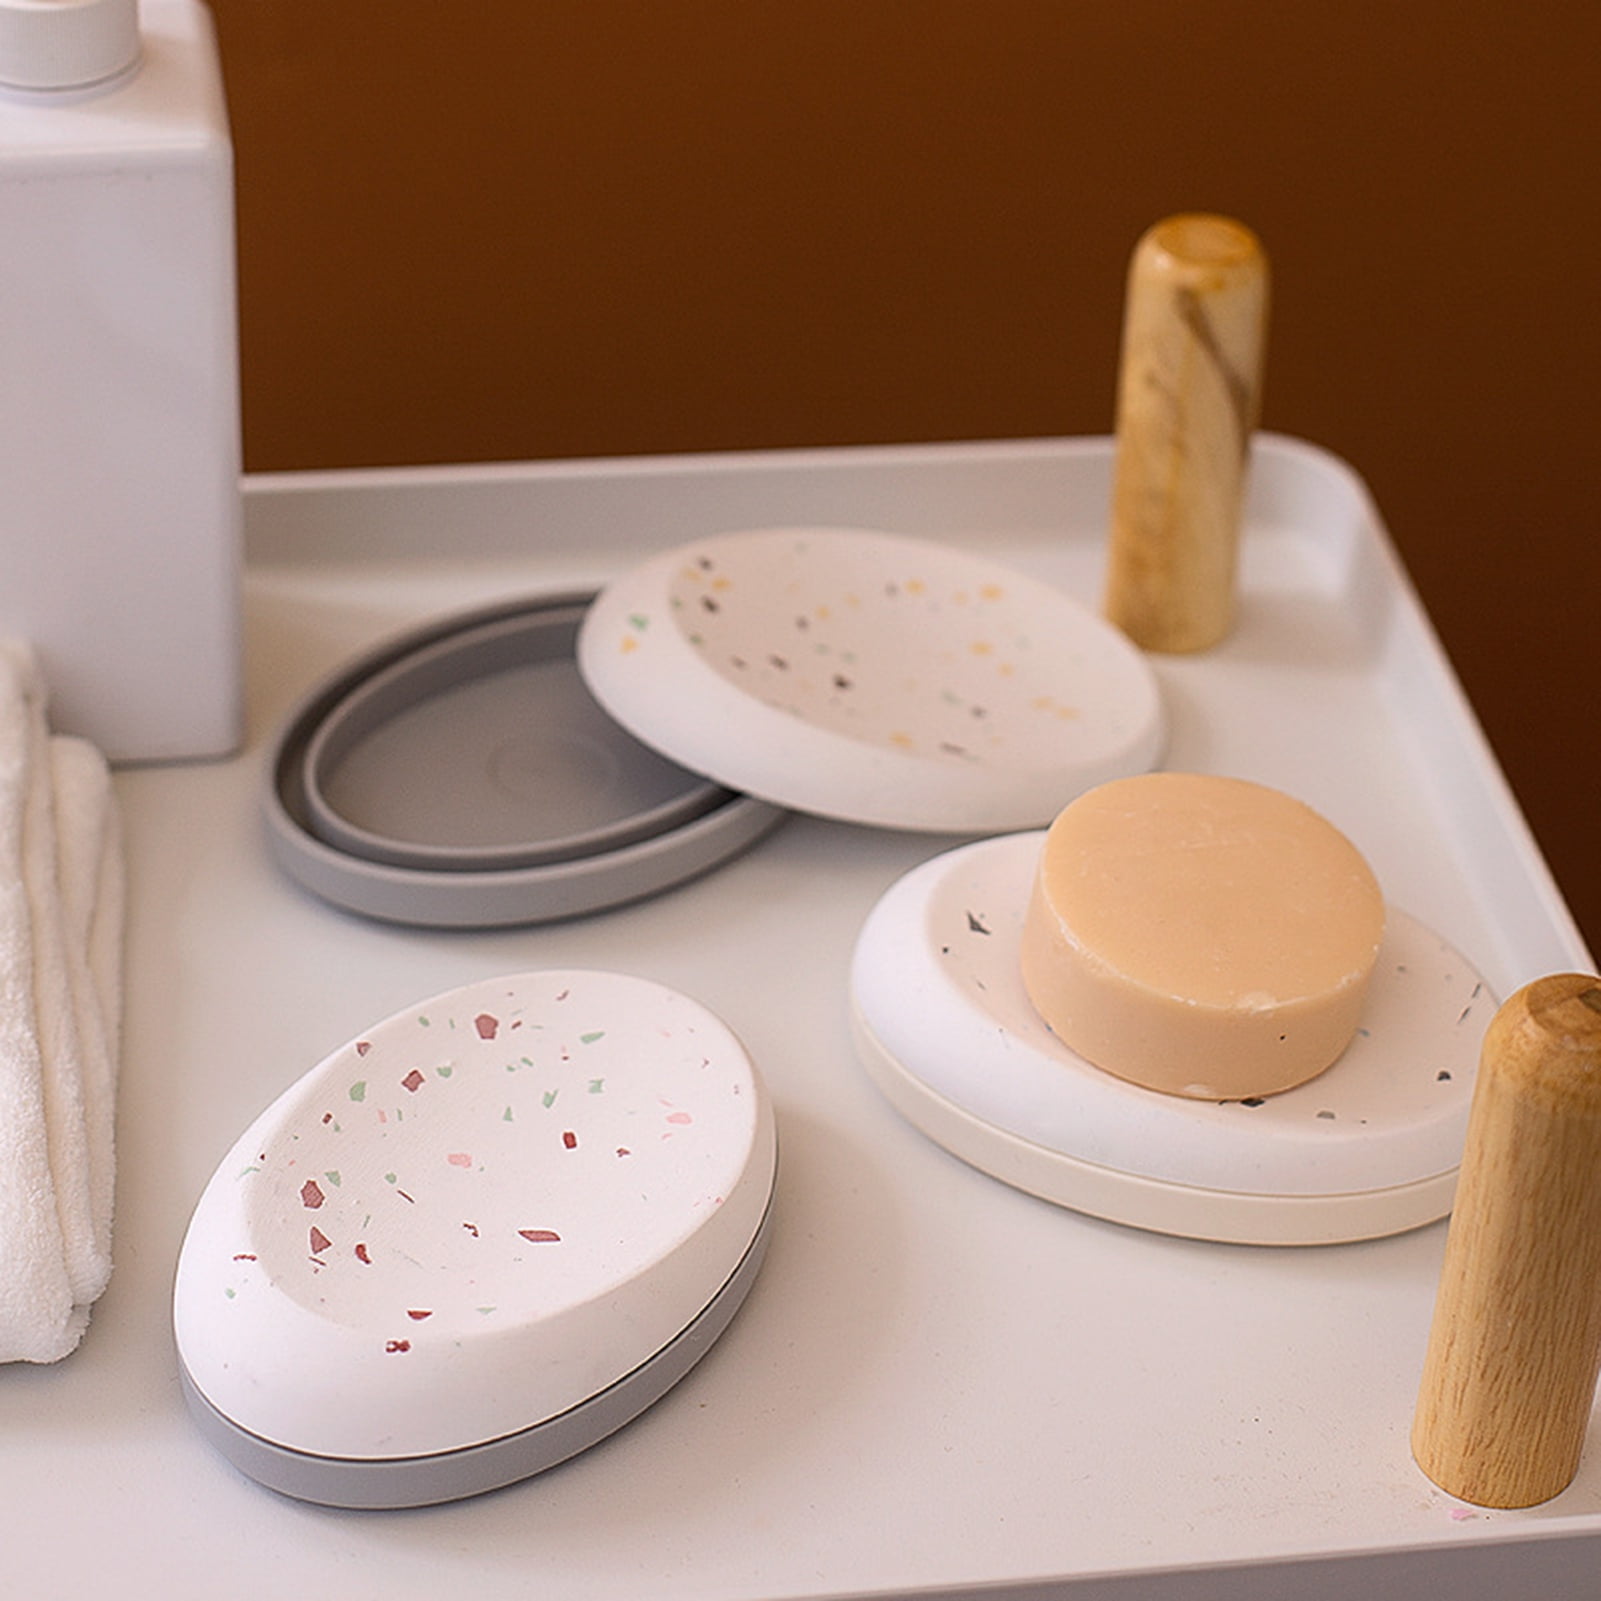 Bobasndm Shower Soap Holder,Self Adhesive Bar Soap Holder for